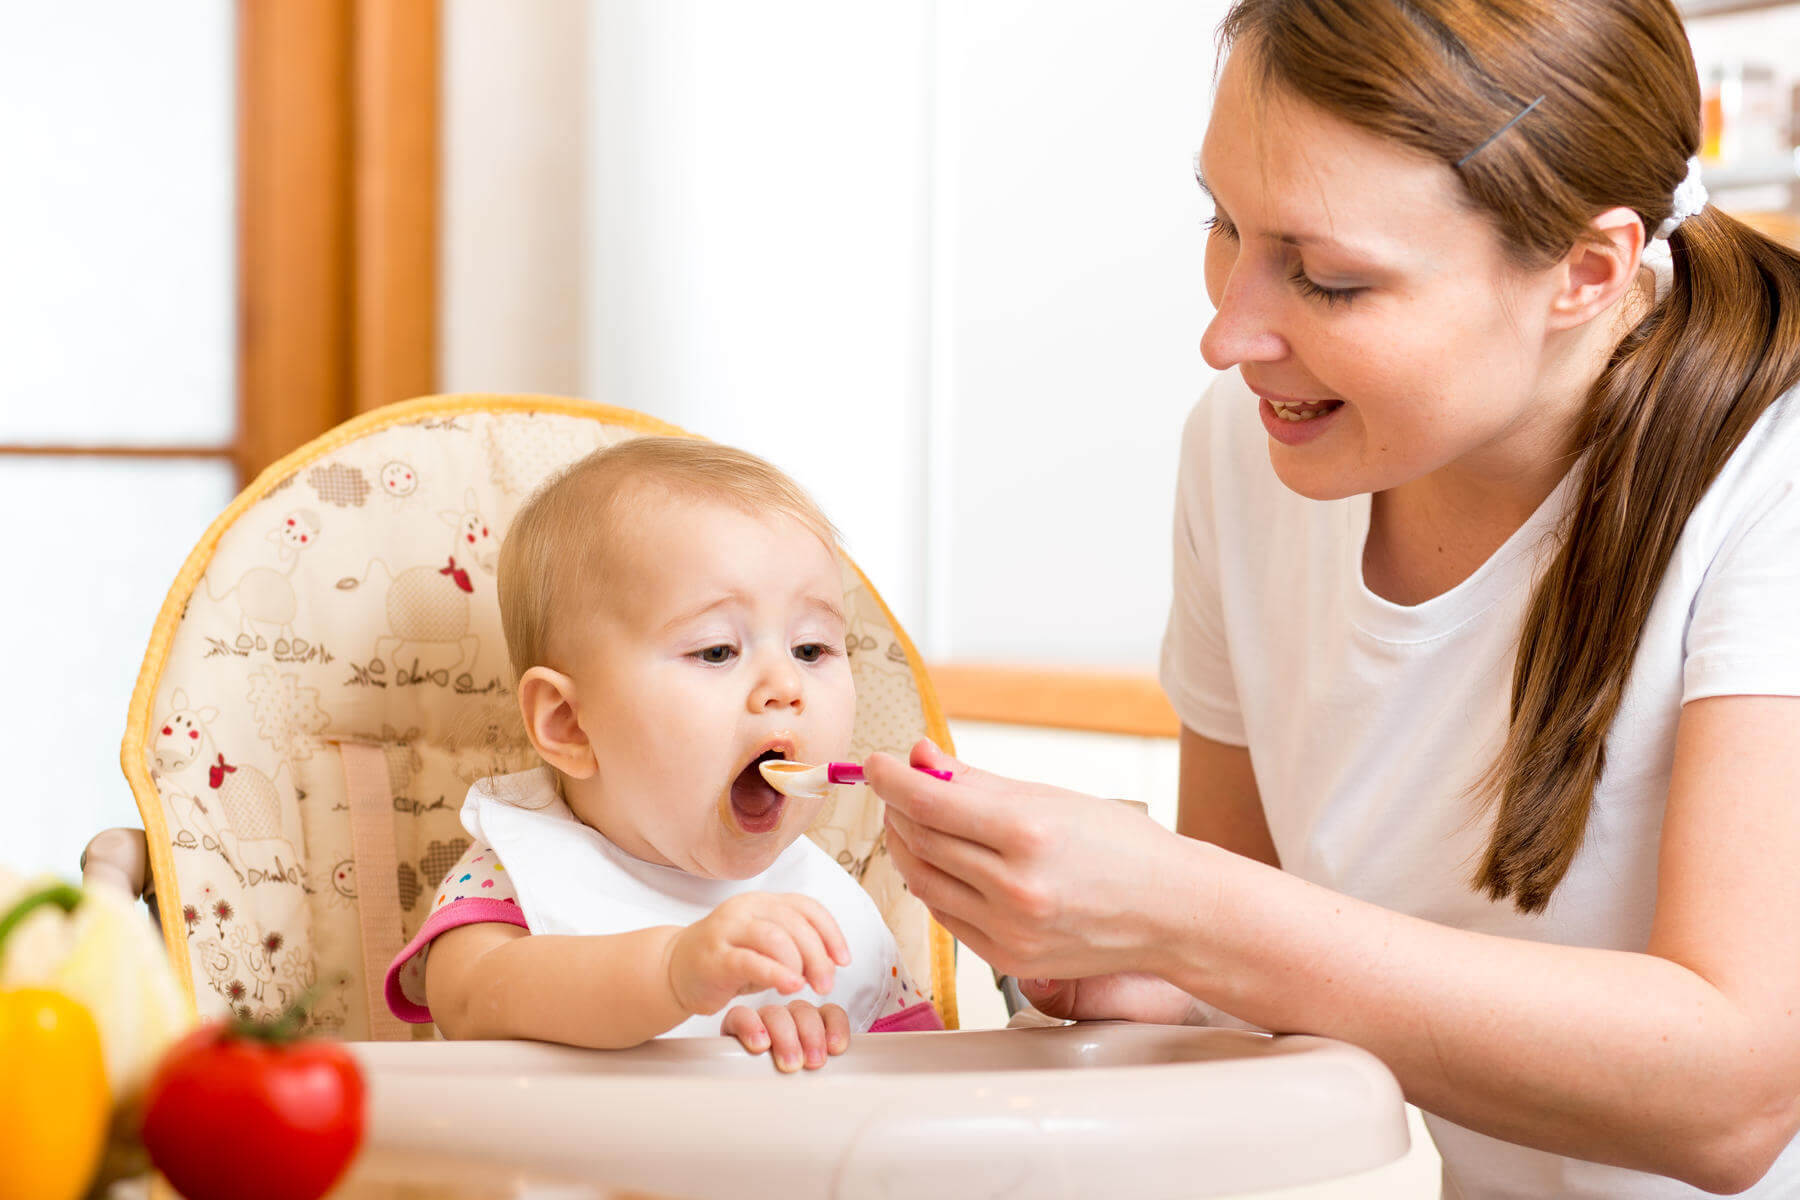 Lysin tăng cường trao đổi chất và tối đa hóa sựu hấp thu dinh dưỡng cho trẻ biếng ăn